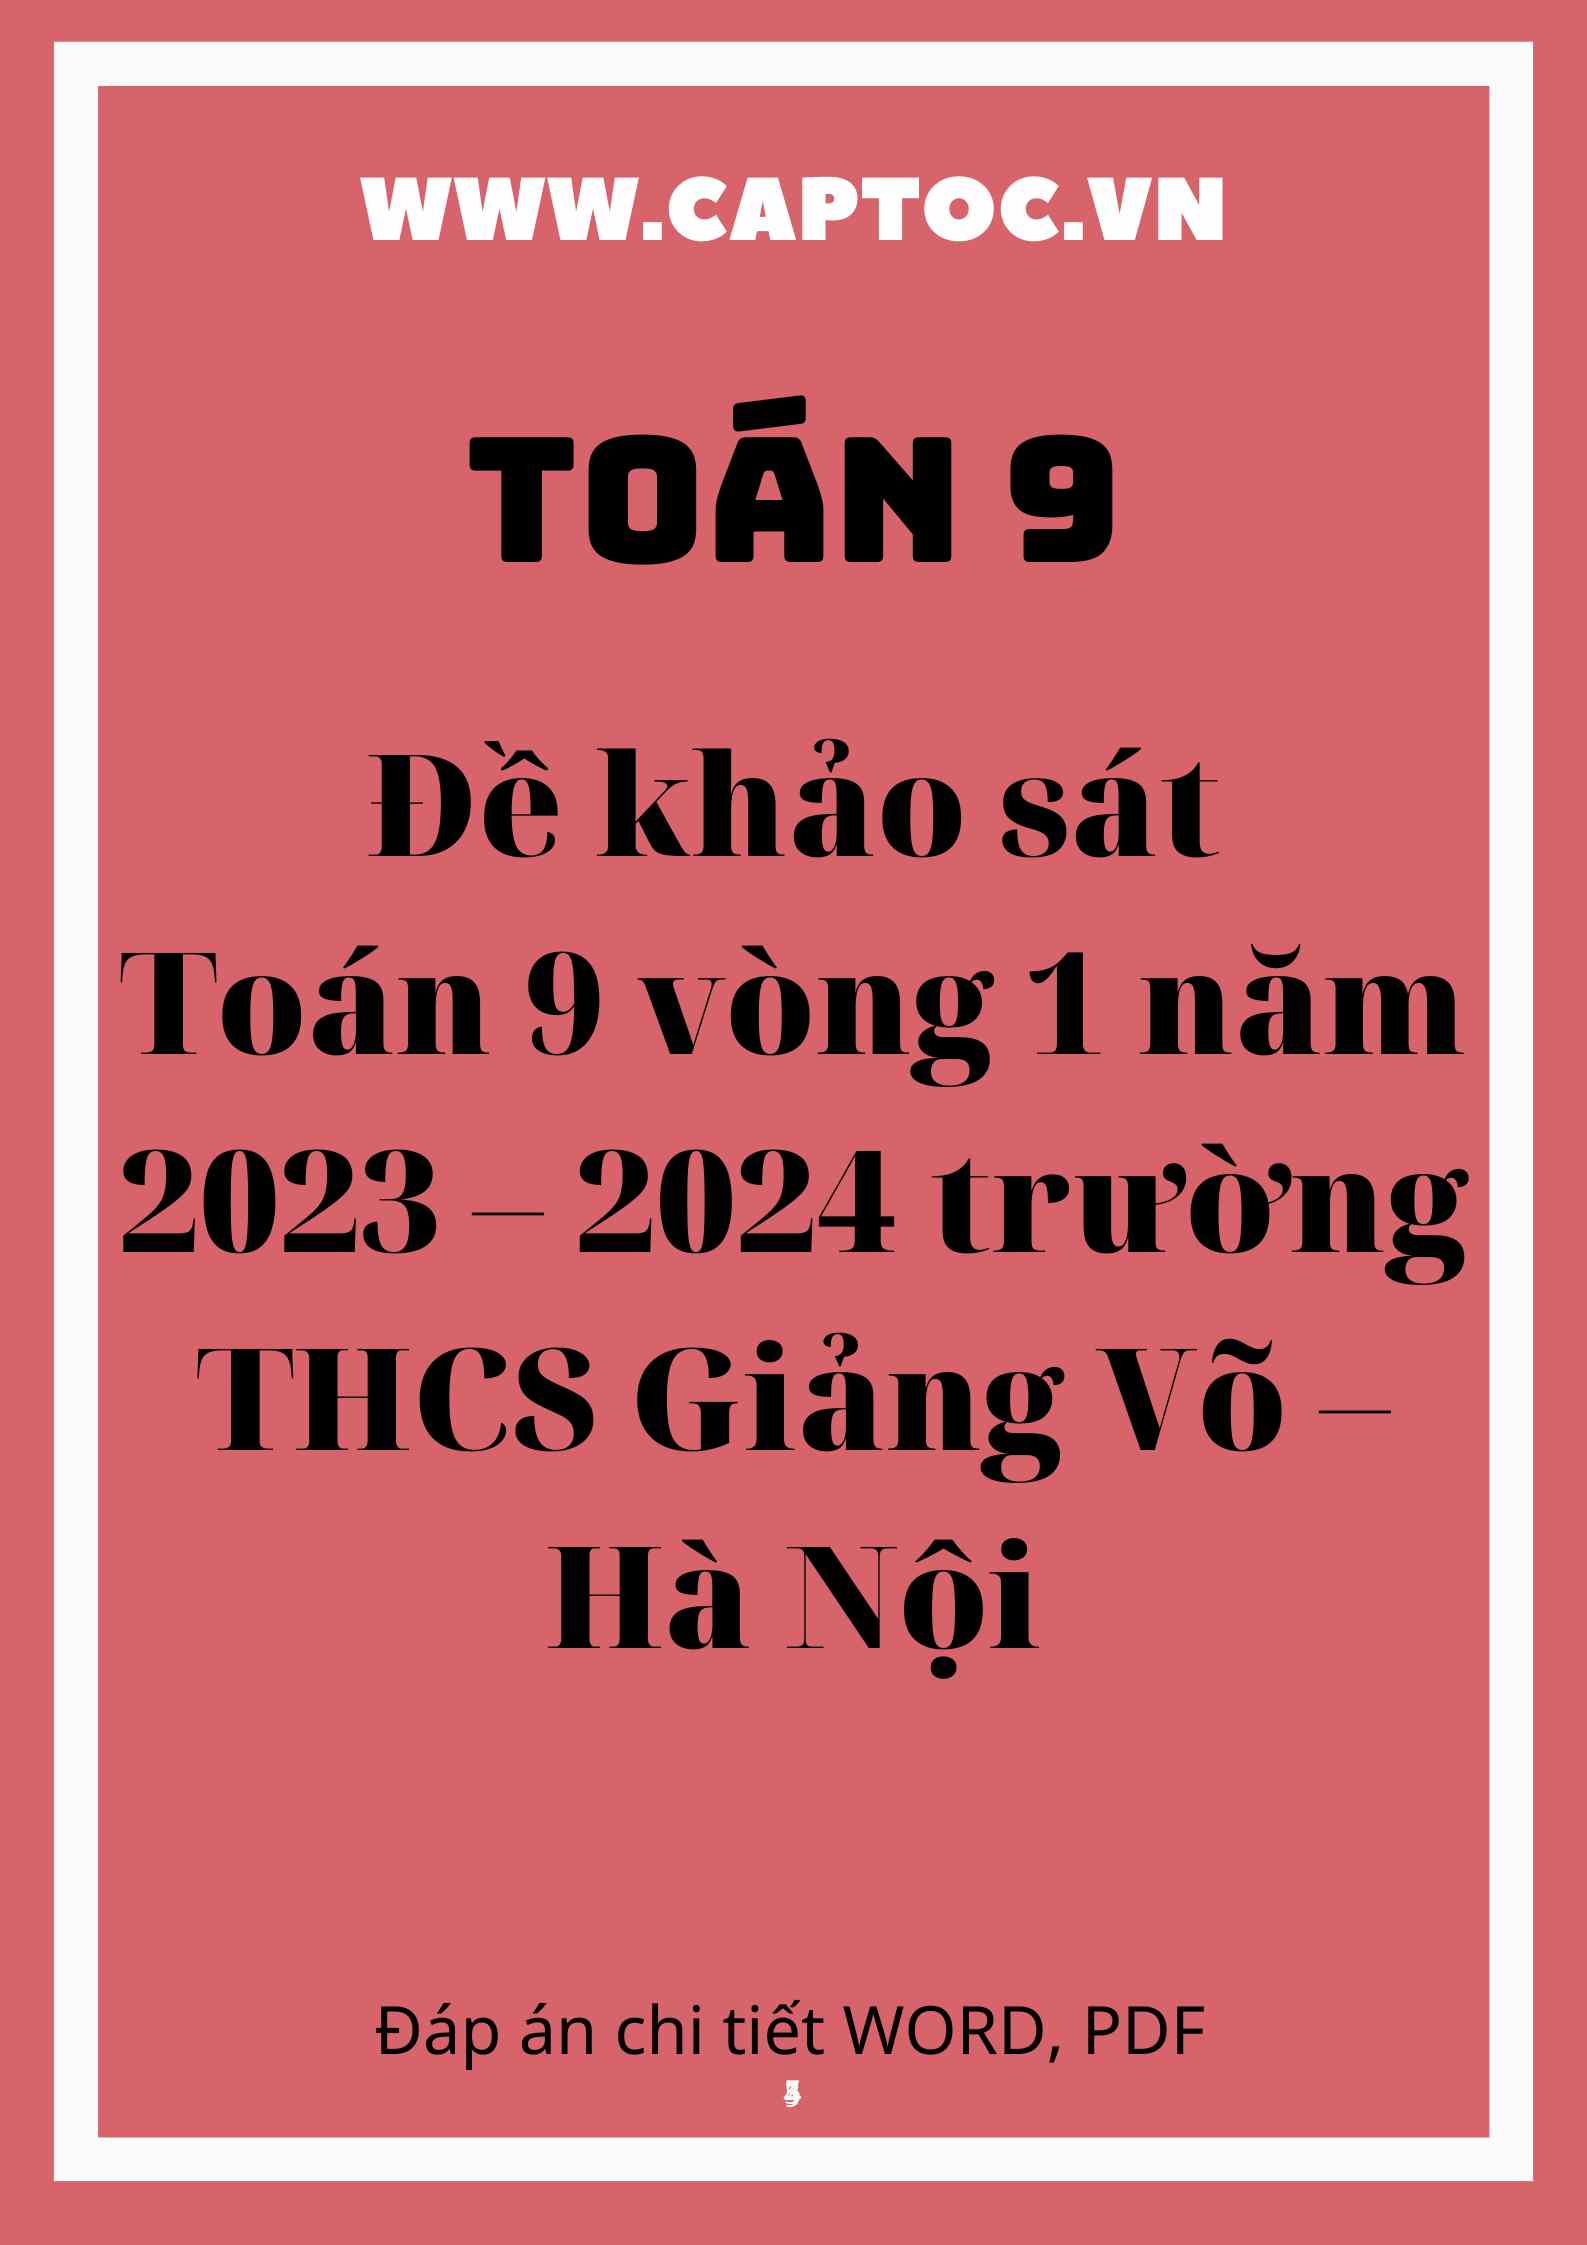 Đề khảo sát Toán 9 vòng 1 năm 2023 – 2024 trường THCS Giảng Võ – Hà Nội